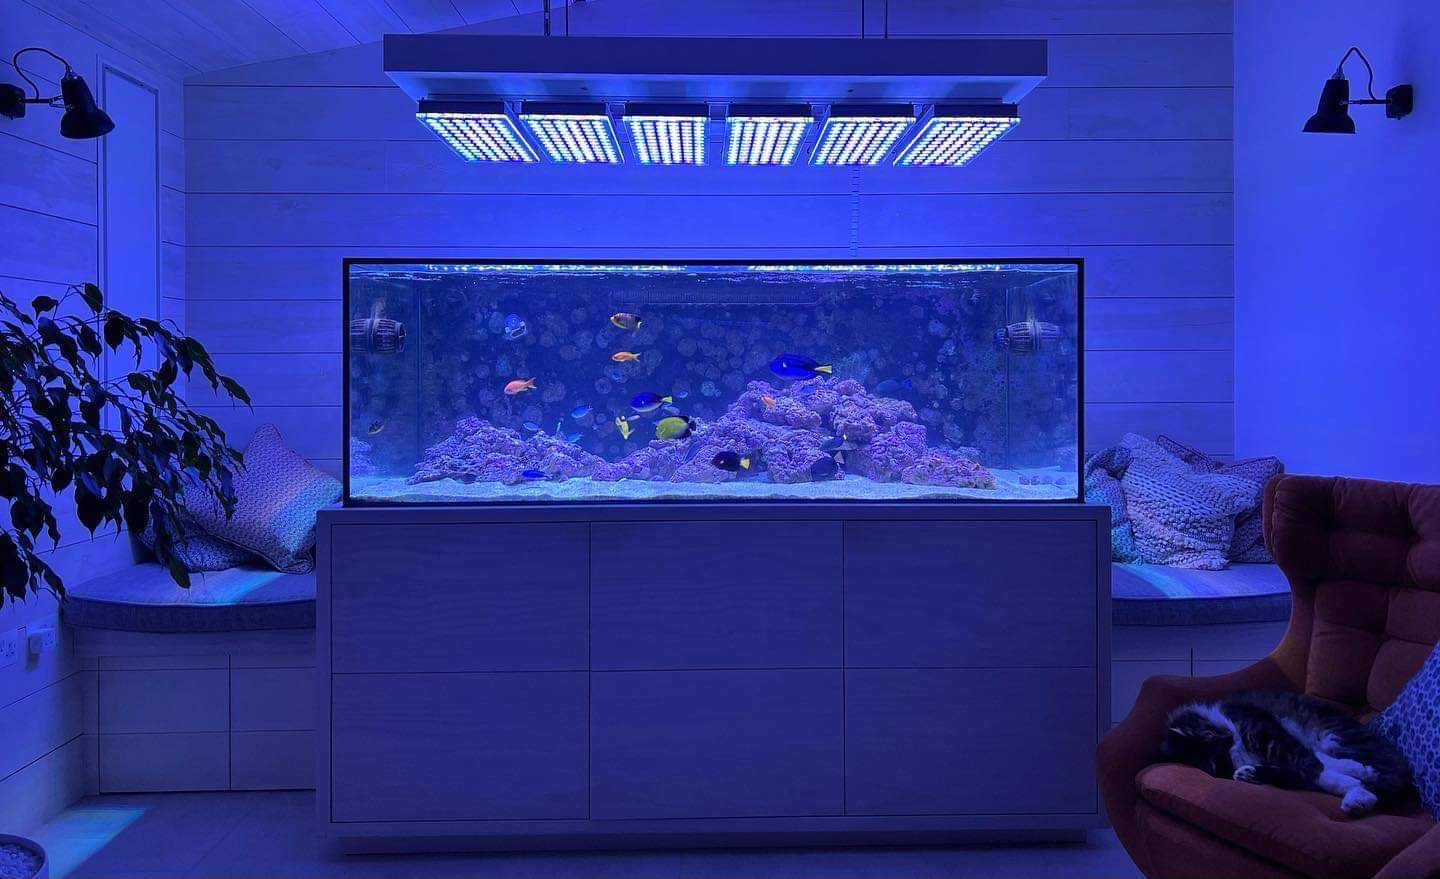 Reef_aquarium_suspended_system_for_Atlantik_iCon_LED_Lighting_placement